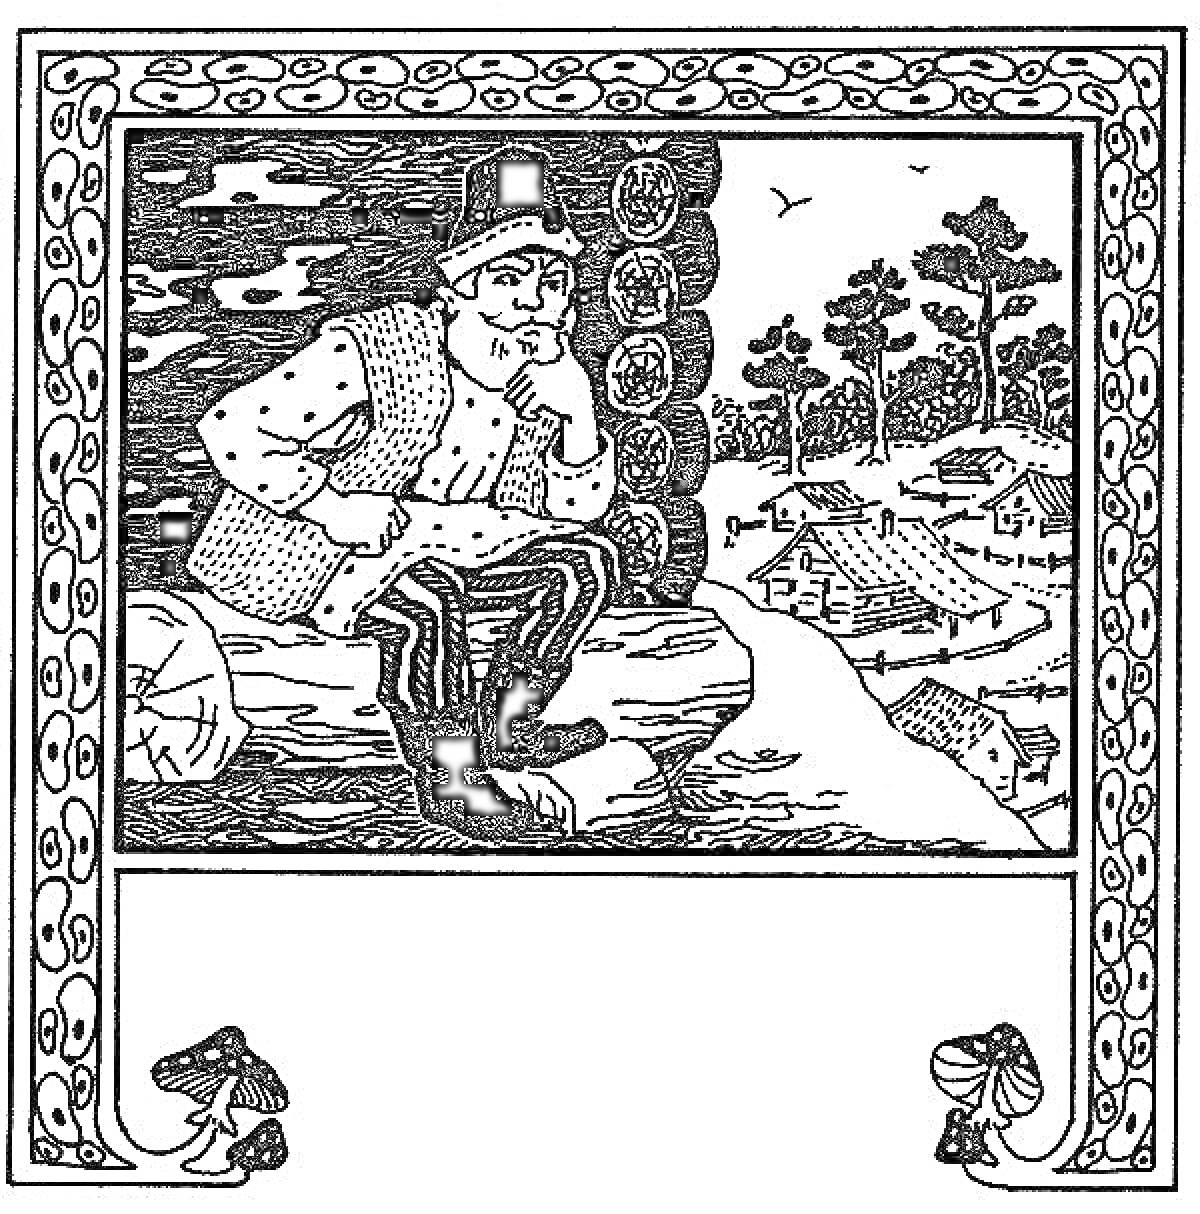 Раскраска Мужчина в жилете и шляпе сидит на бревне, деревенский пейзаж на заднем плане, грибы по углам страци